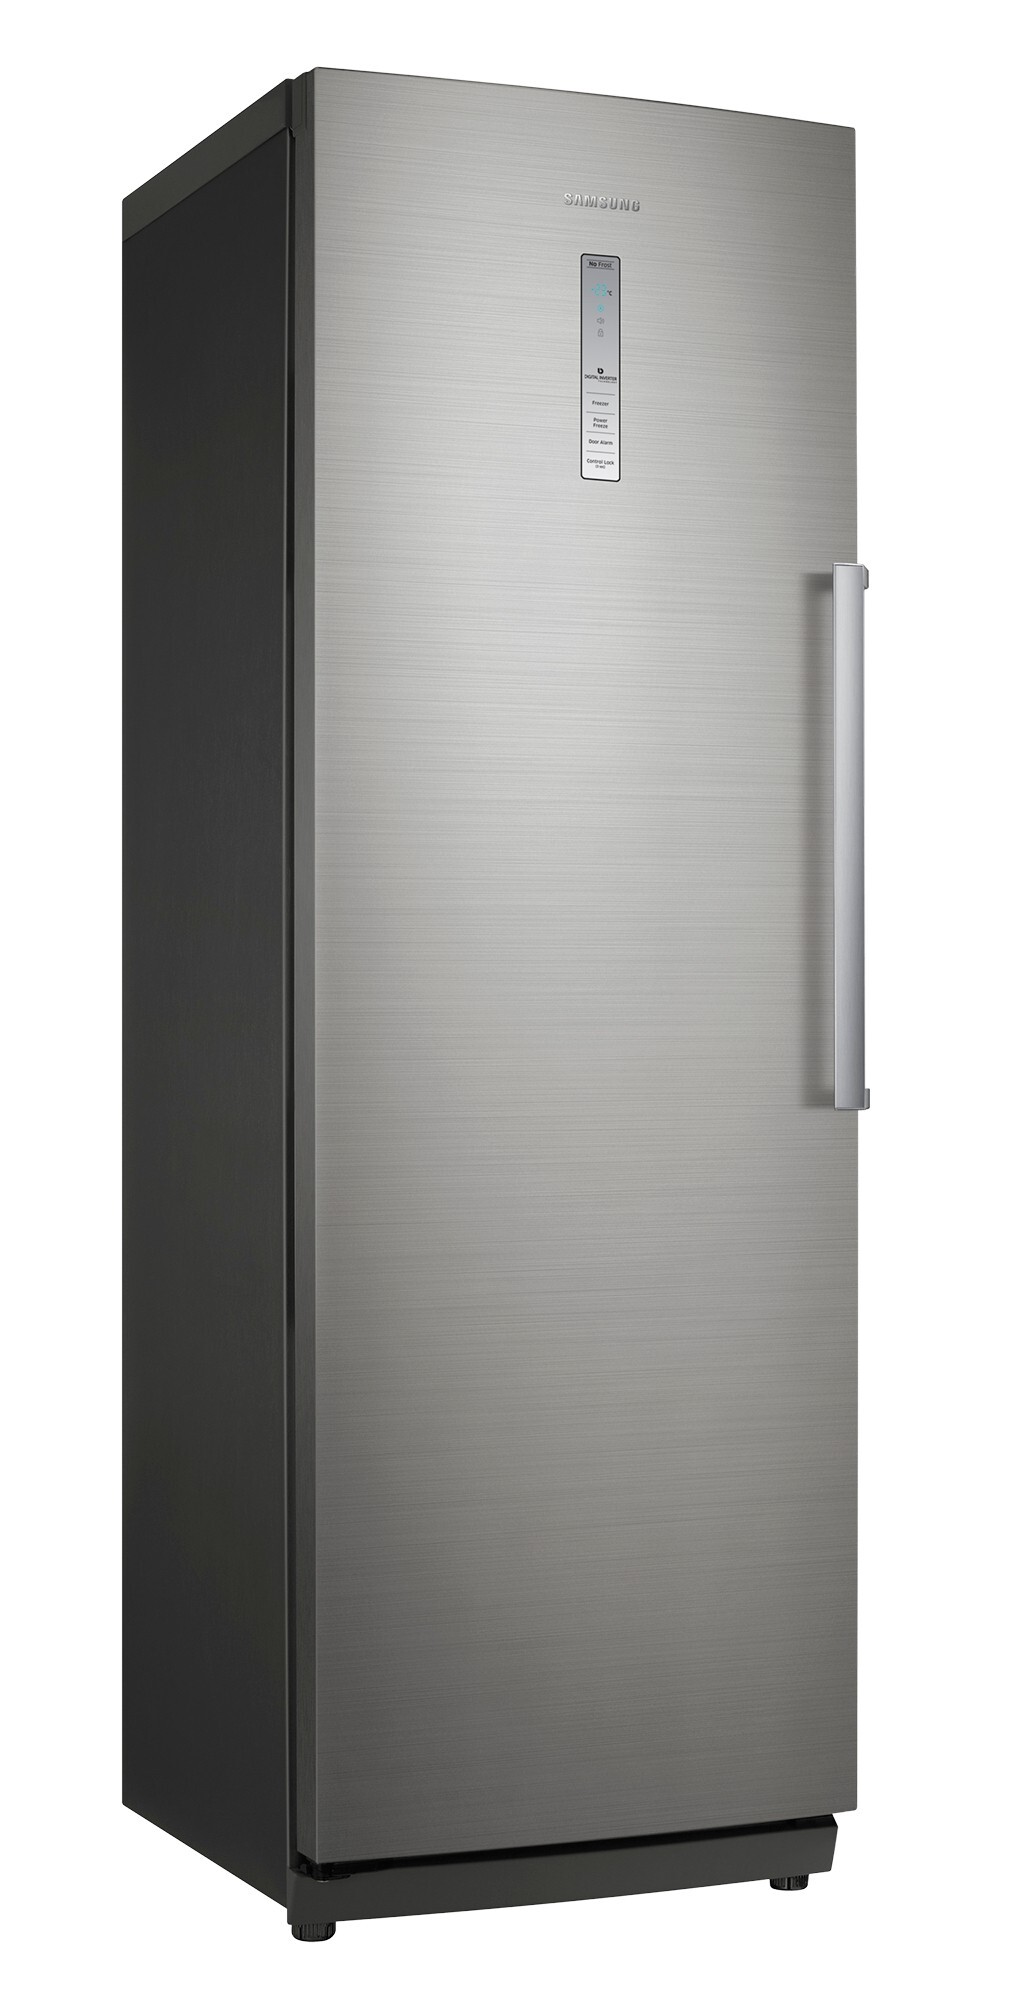 Tủ lạnh Samsung 281 lít RZ28H61507F/SV